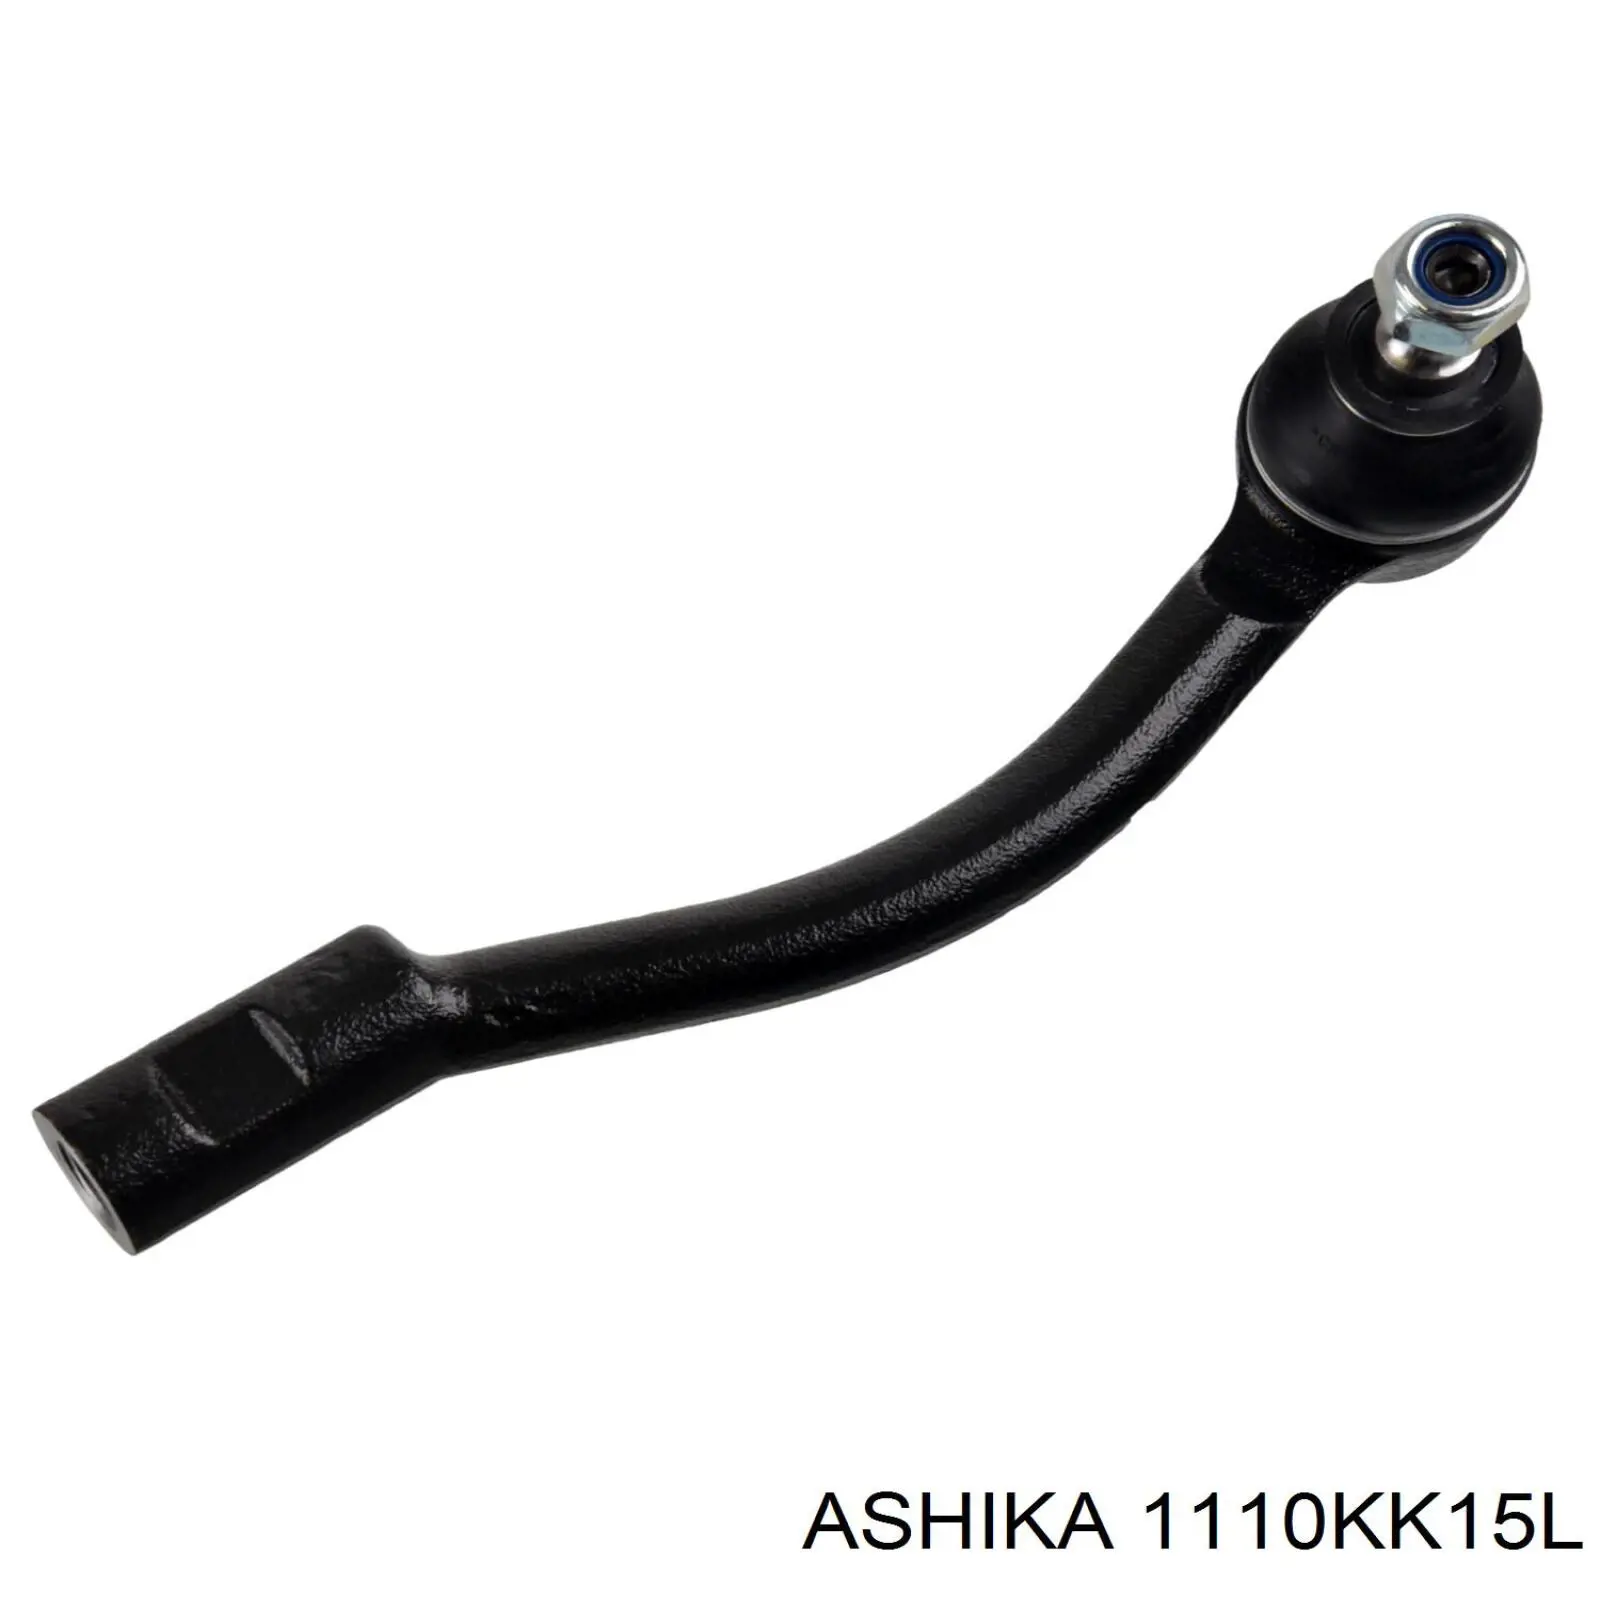 111-0K-K15L Ashika rótula barra de acoplamiento exterior